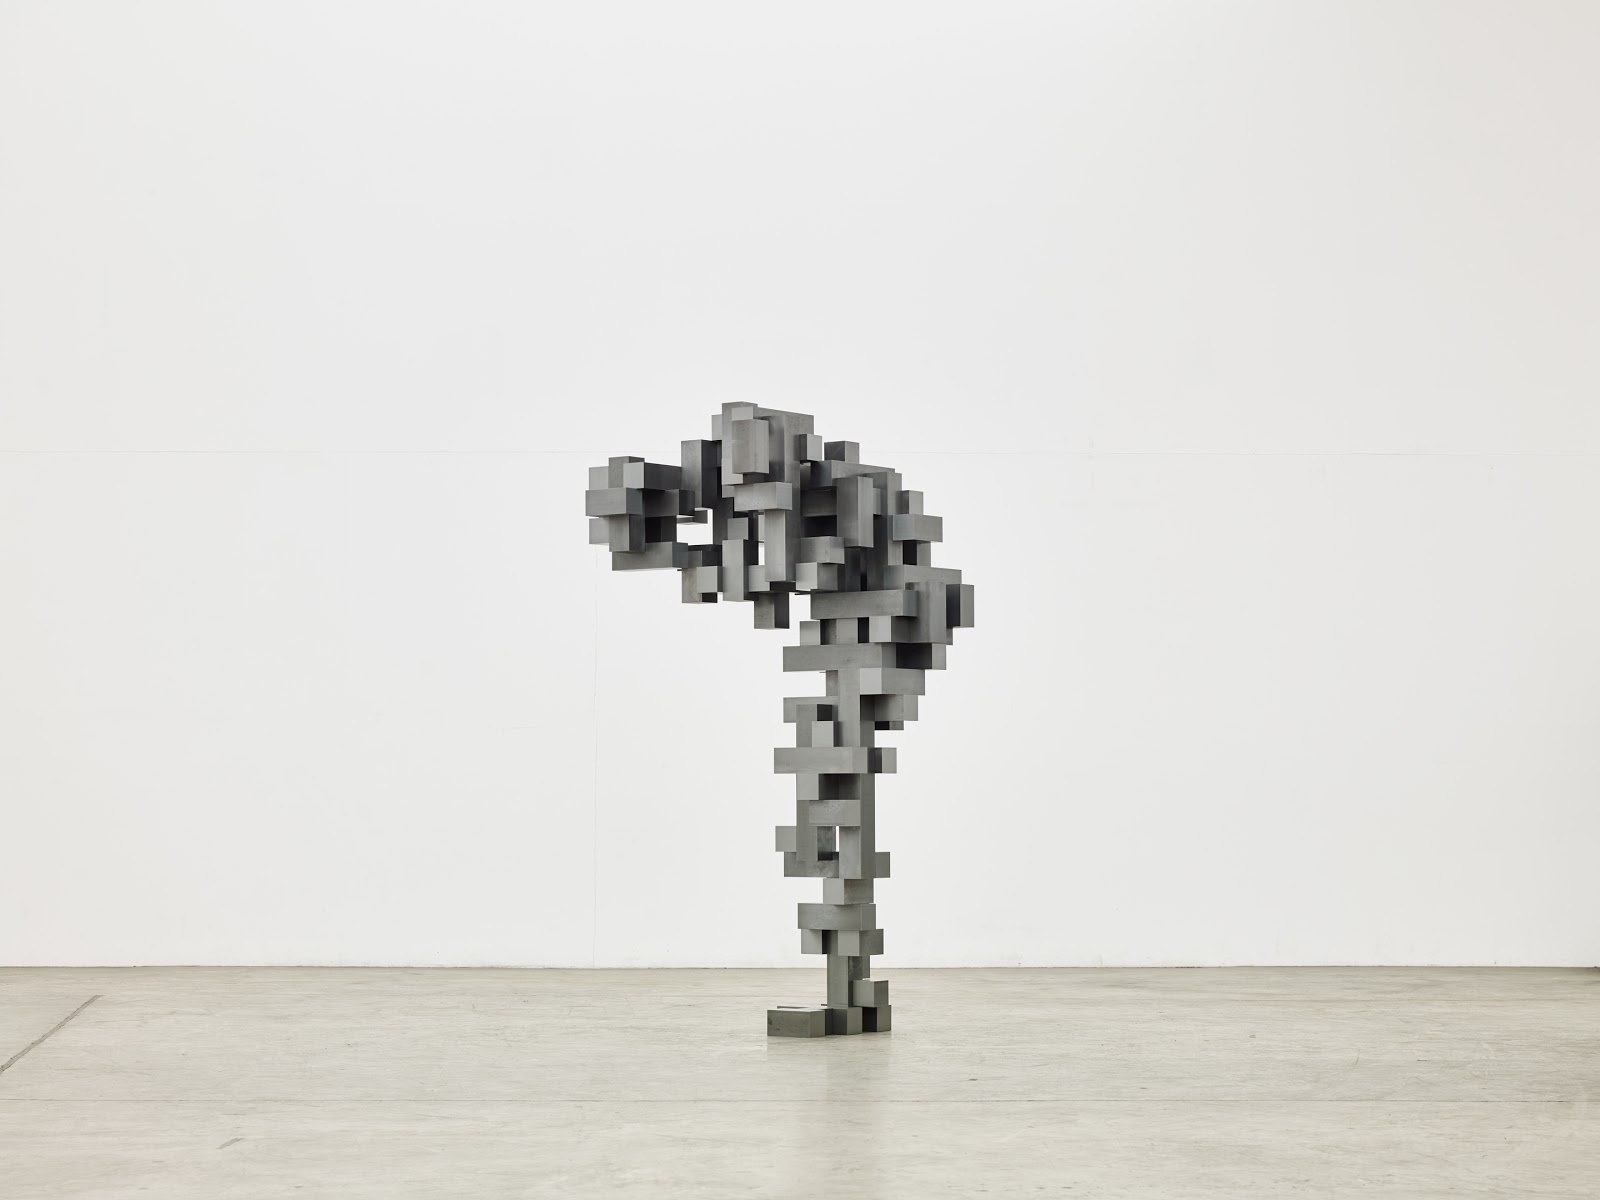 替你看展:雕塑大师安东尼 葛姆雷的北京纽约个展_搜狐文化_搜狐网